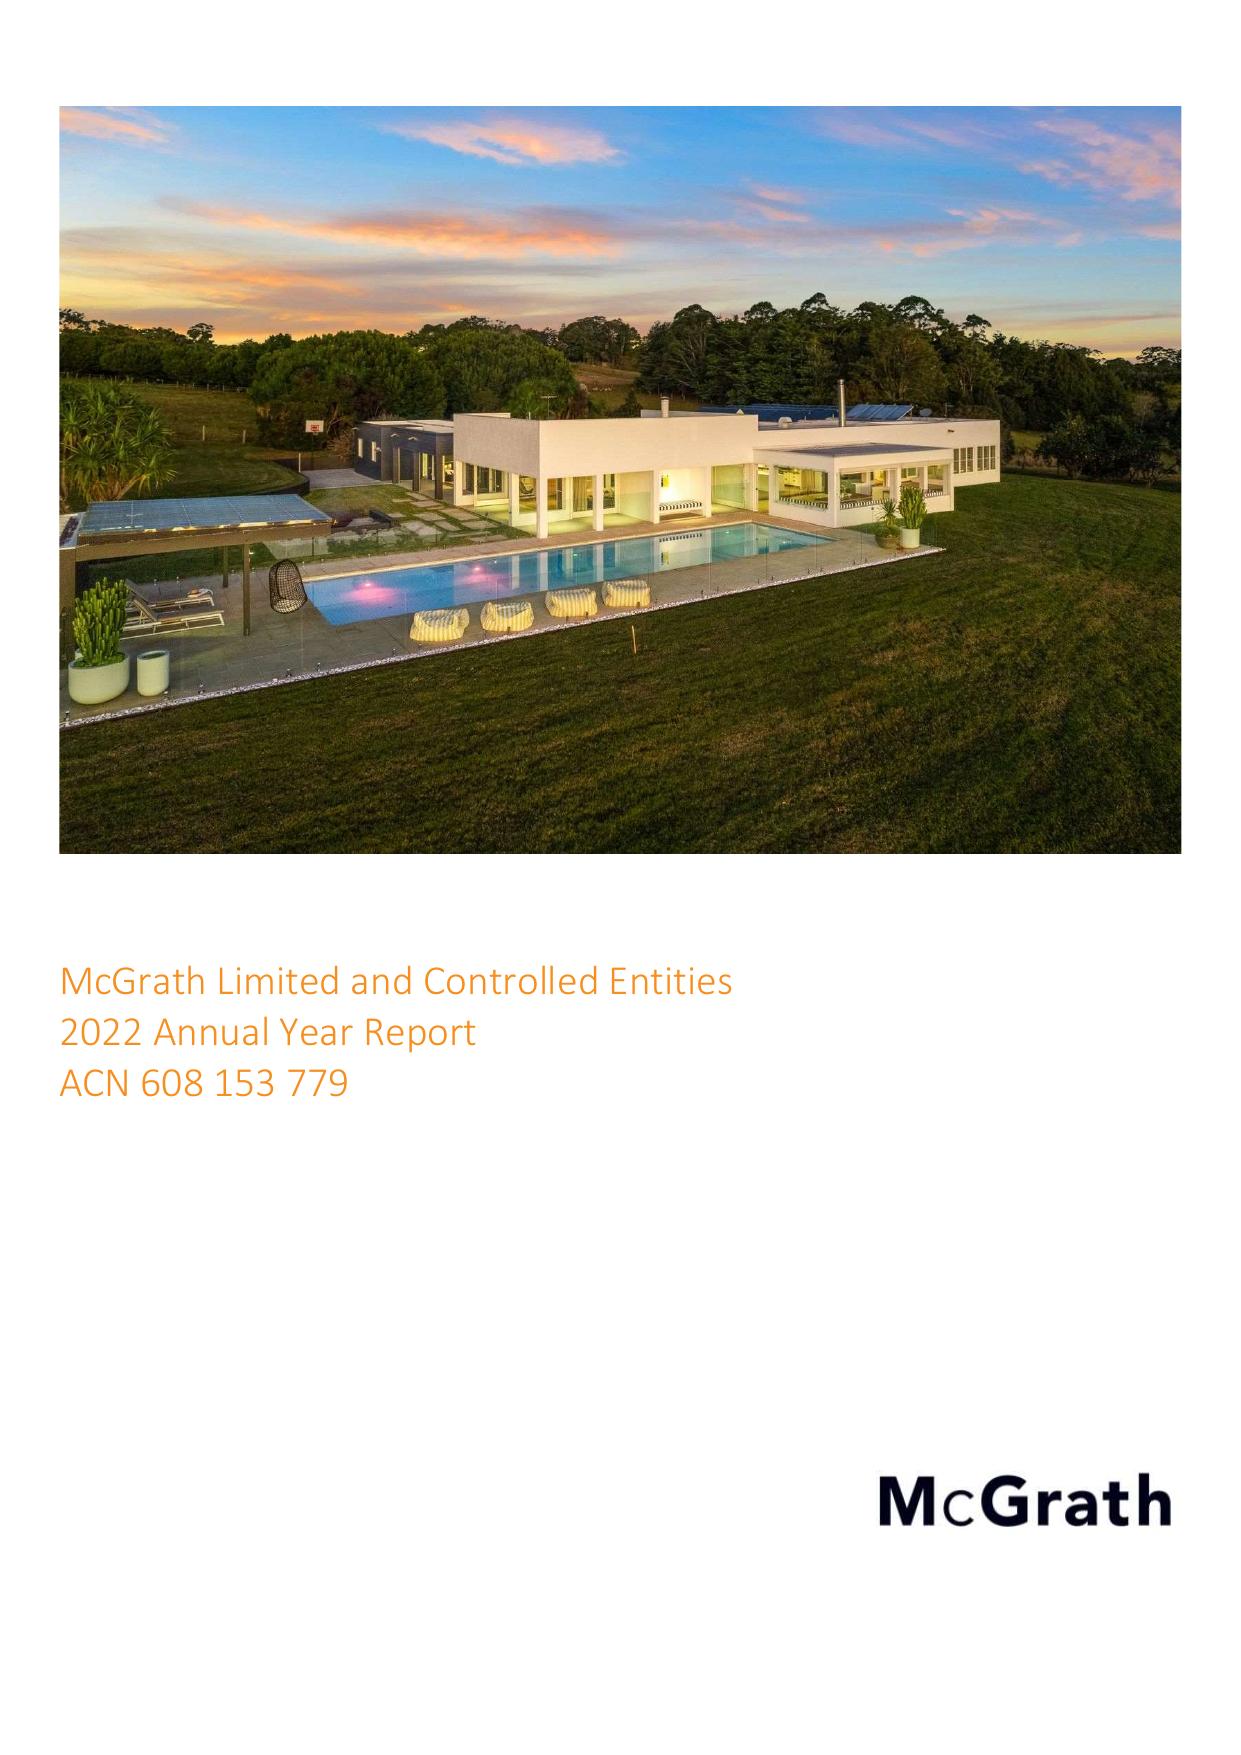 STRUTTANDPARKER 2022 Annual Report